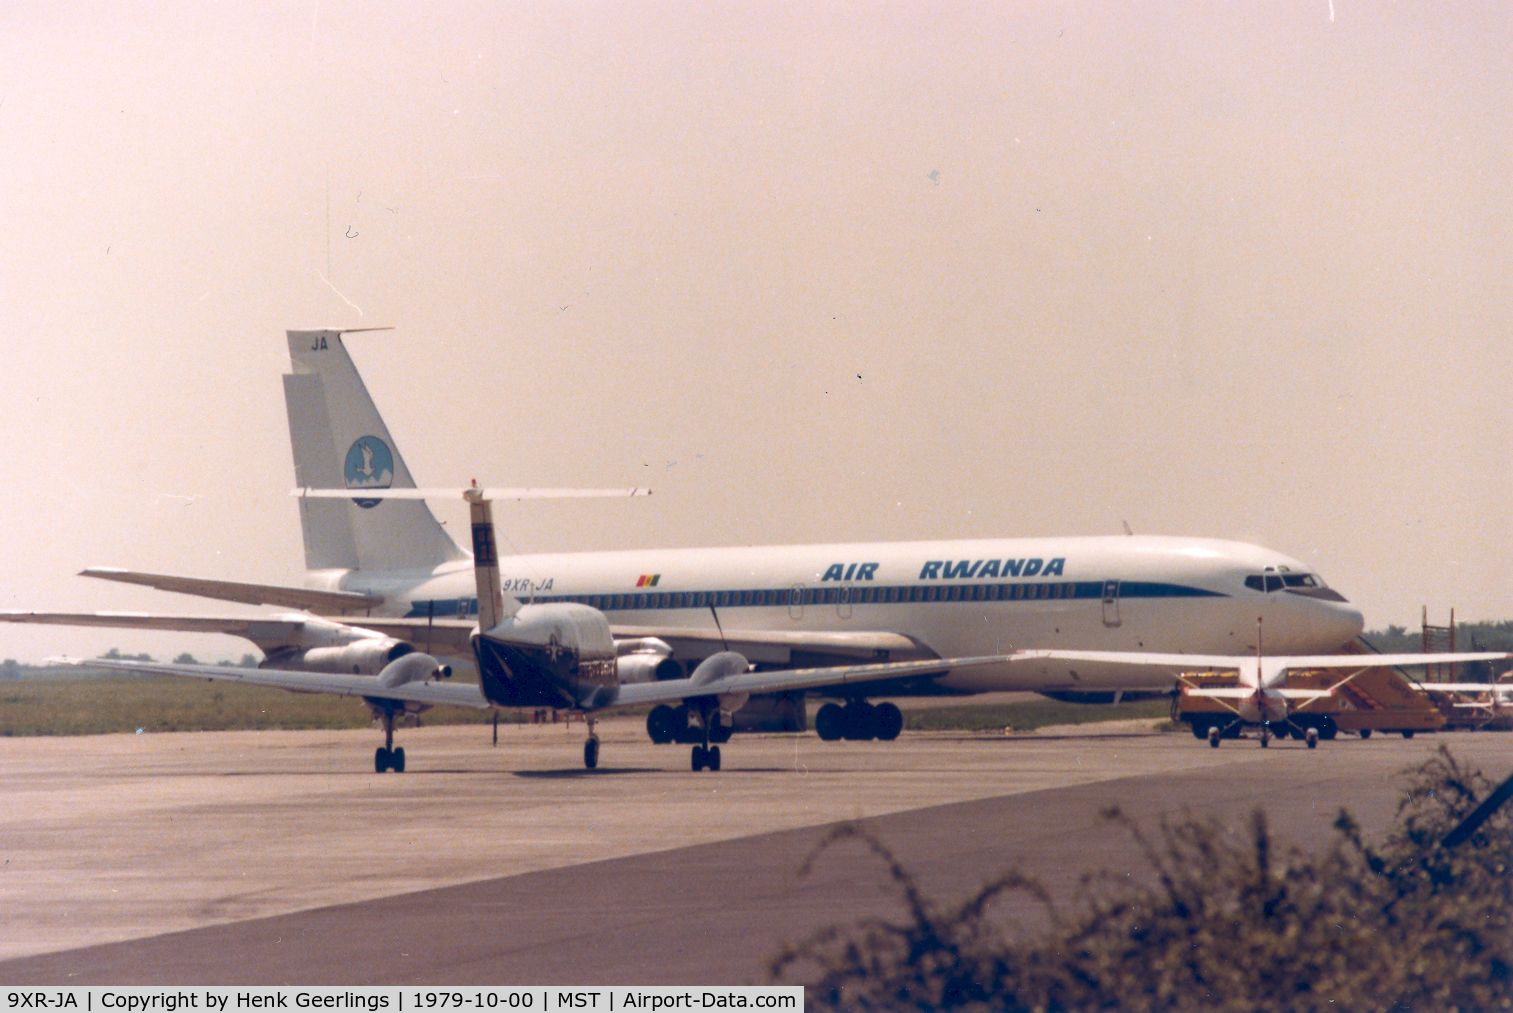 9XR-JA, 1967 Boeing 707-328C C/N 19292, Air Rwanda